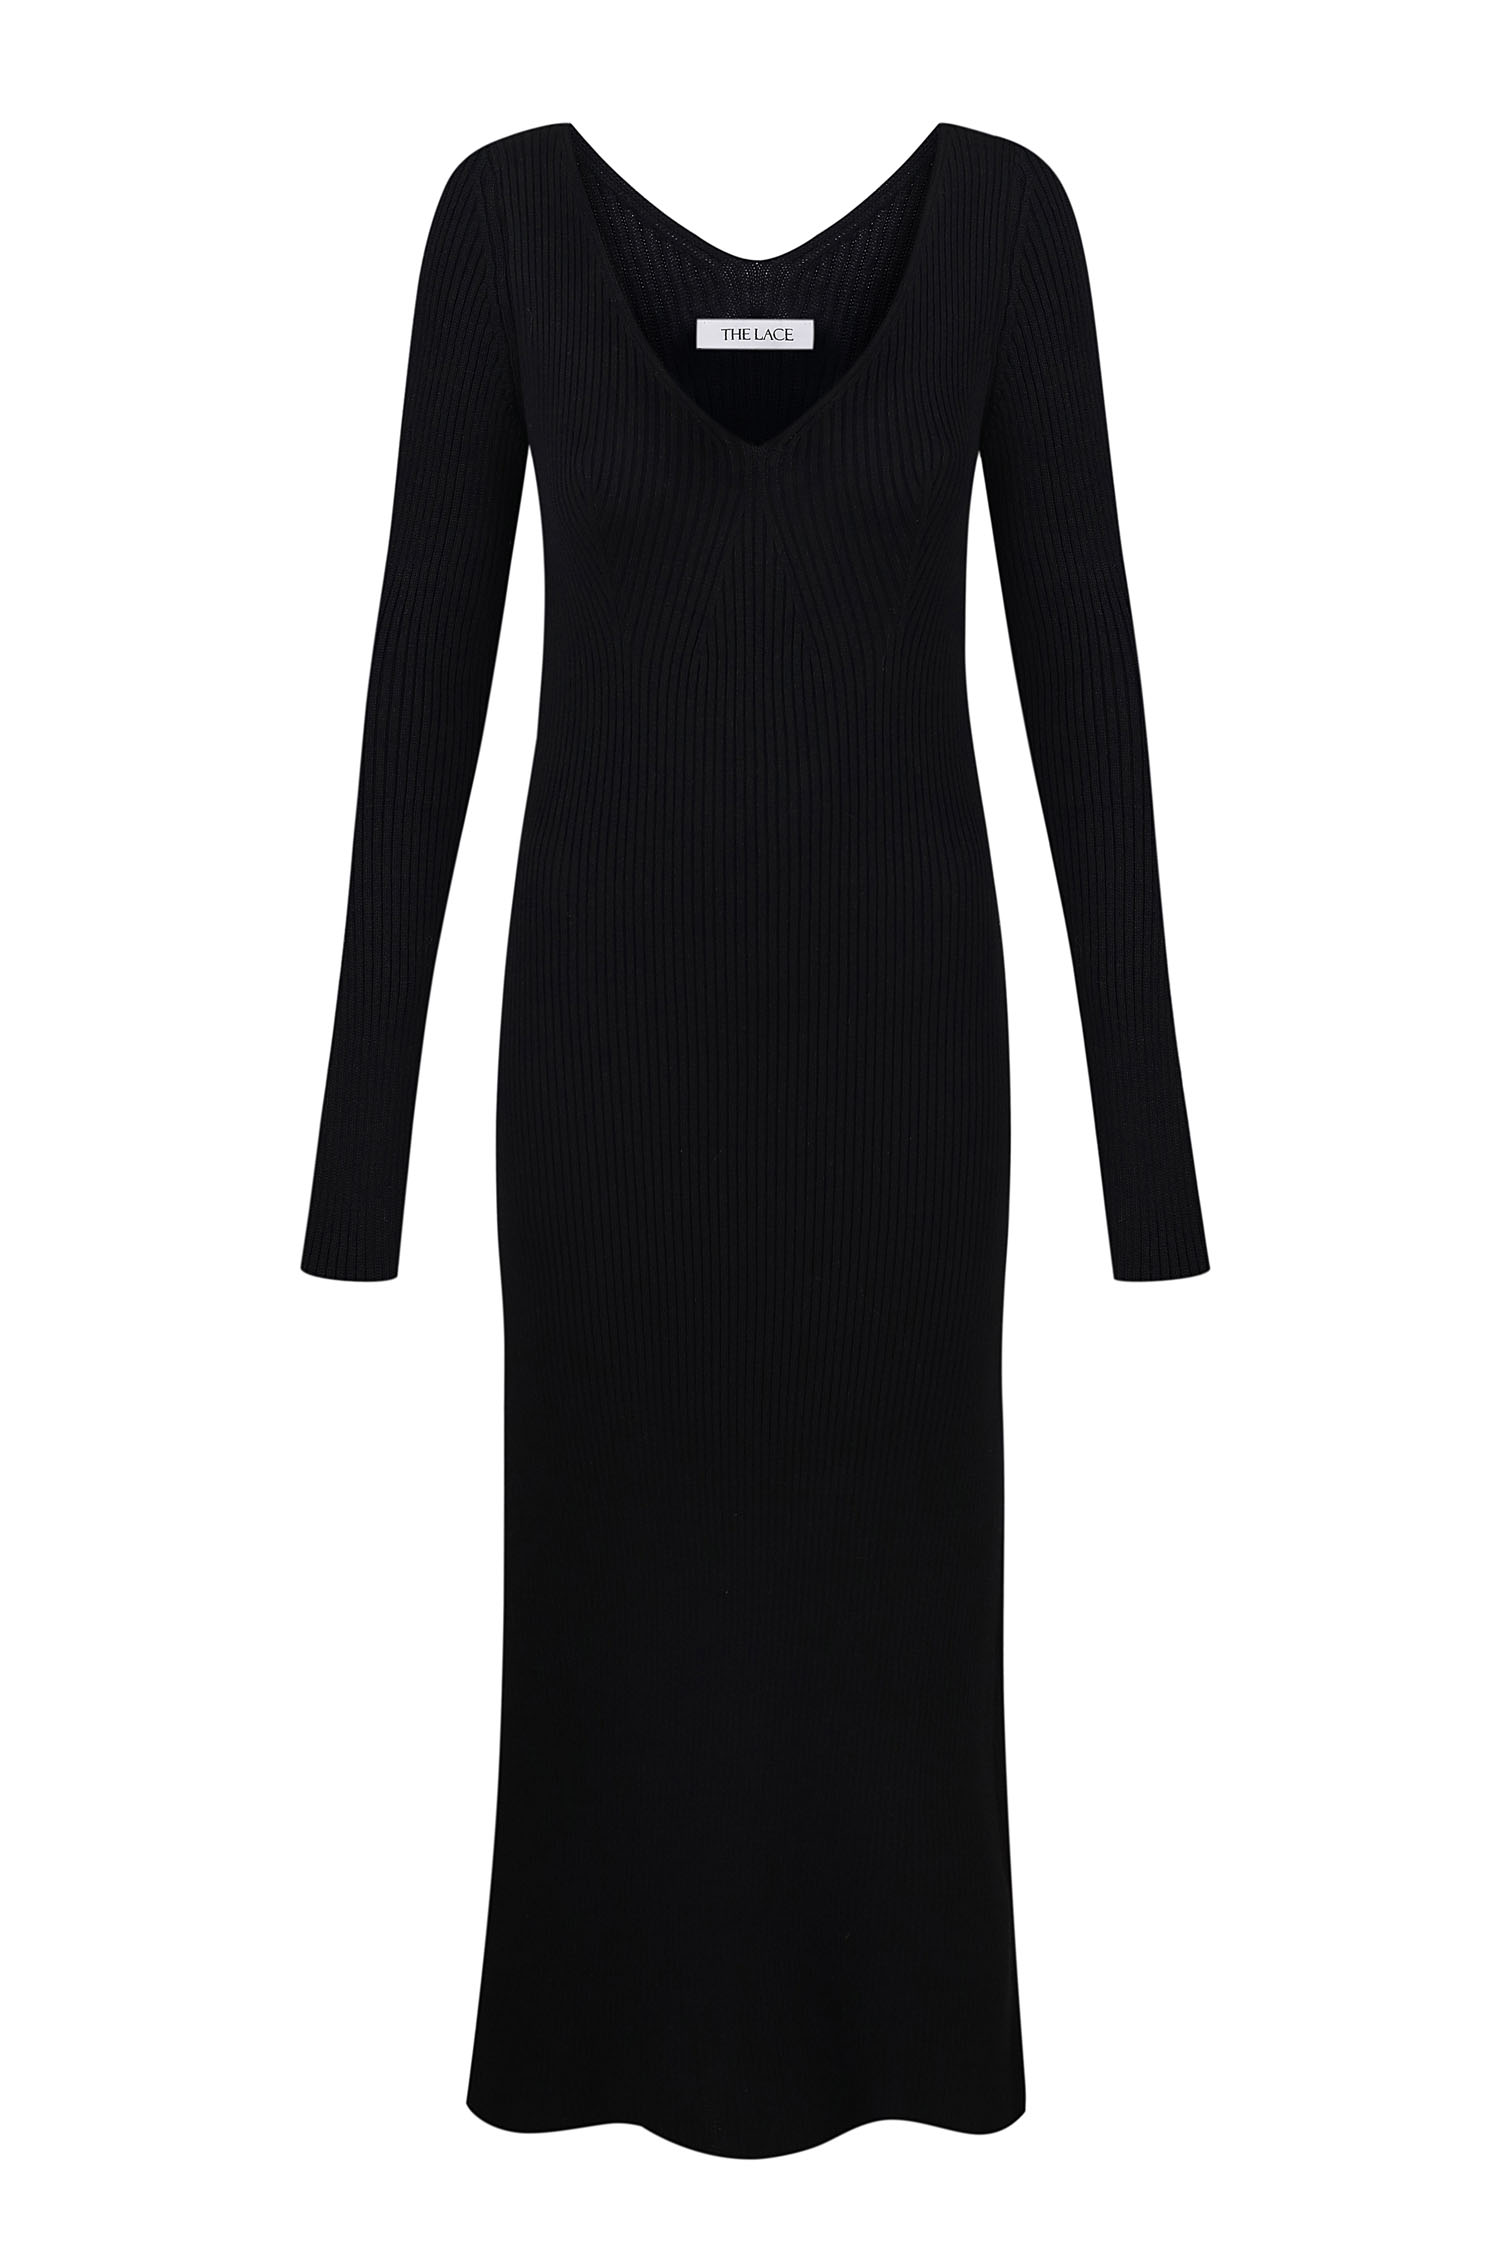 Трикотажна сукня міді з відкритою спиною чорна - THE LACE photo 127947